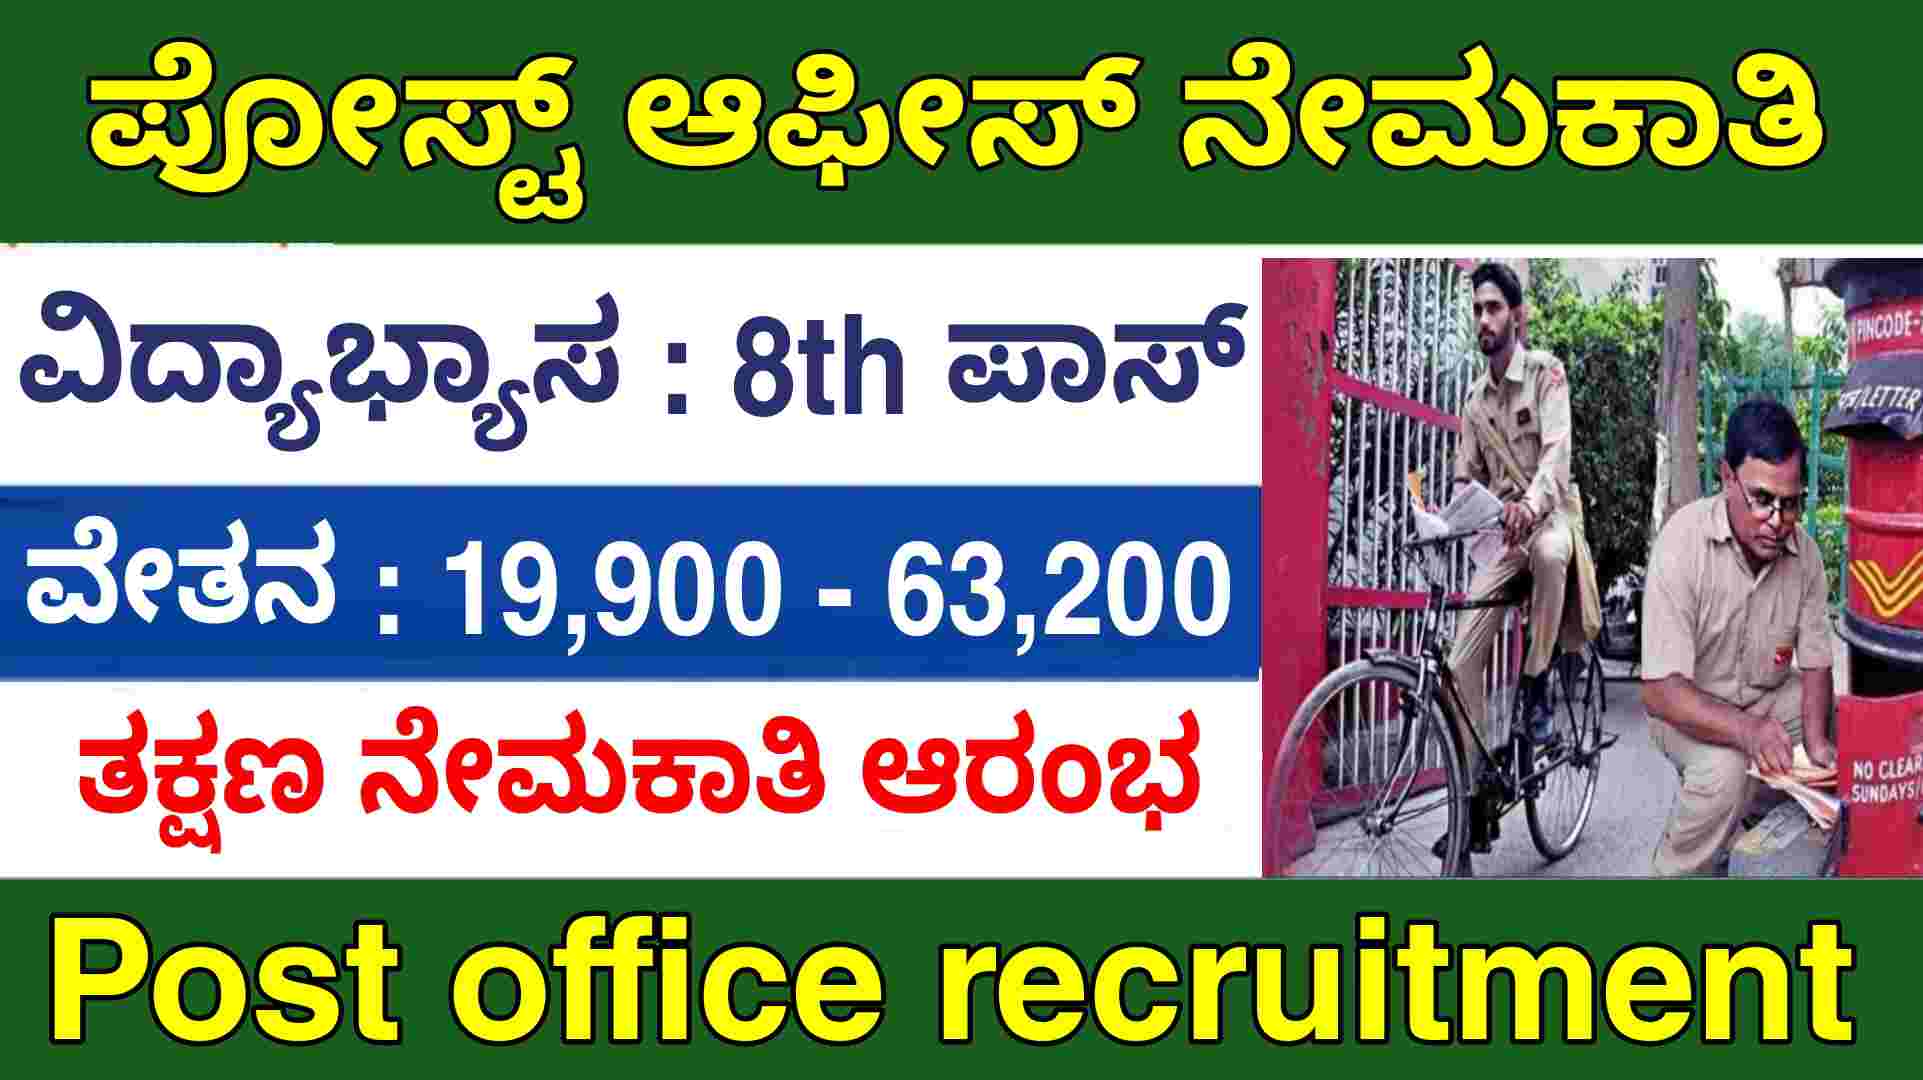 India post recruitment